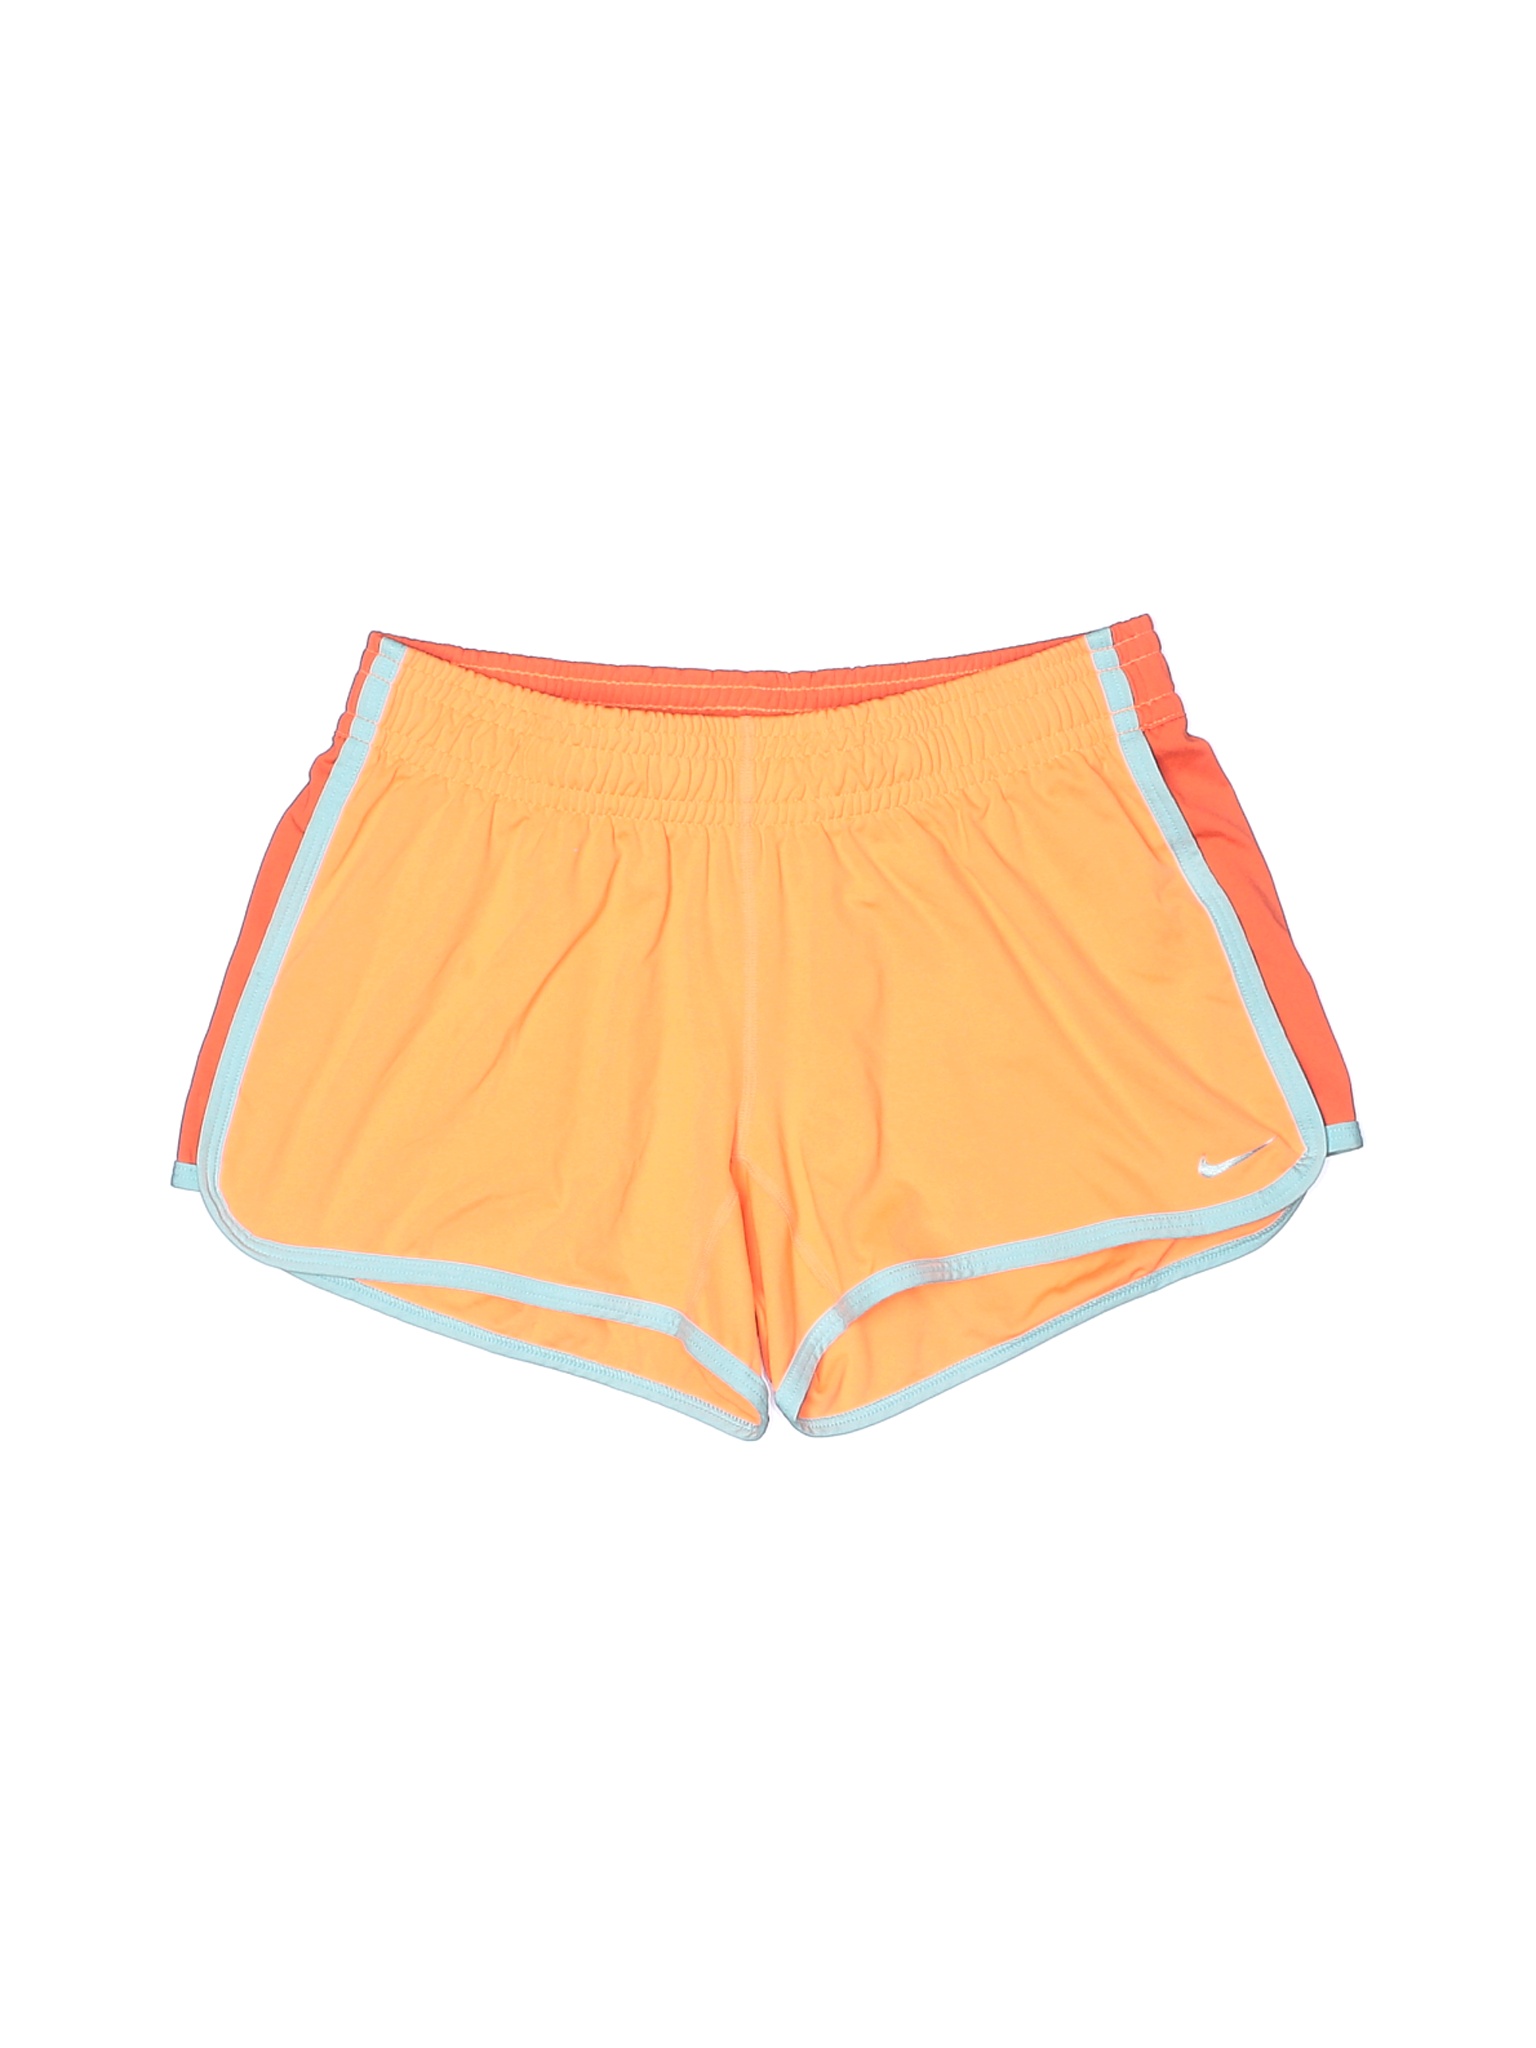 Nike Women Orange Athletic Shorts S | eBay